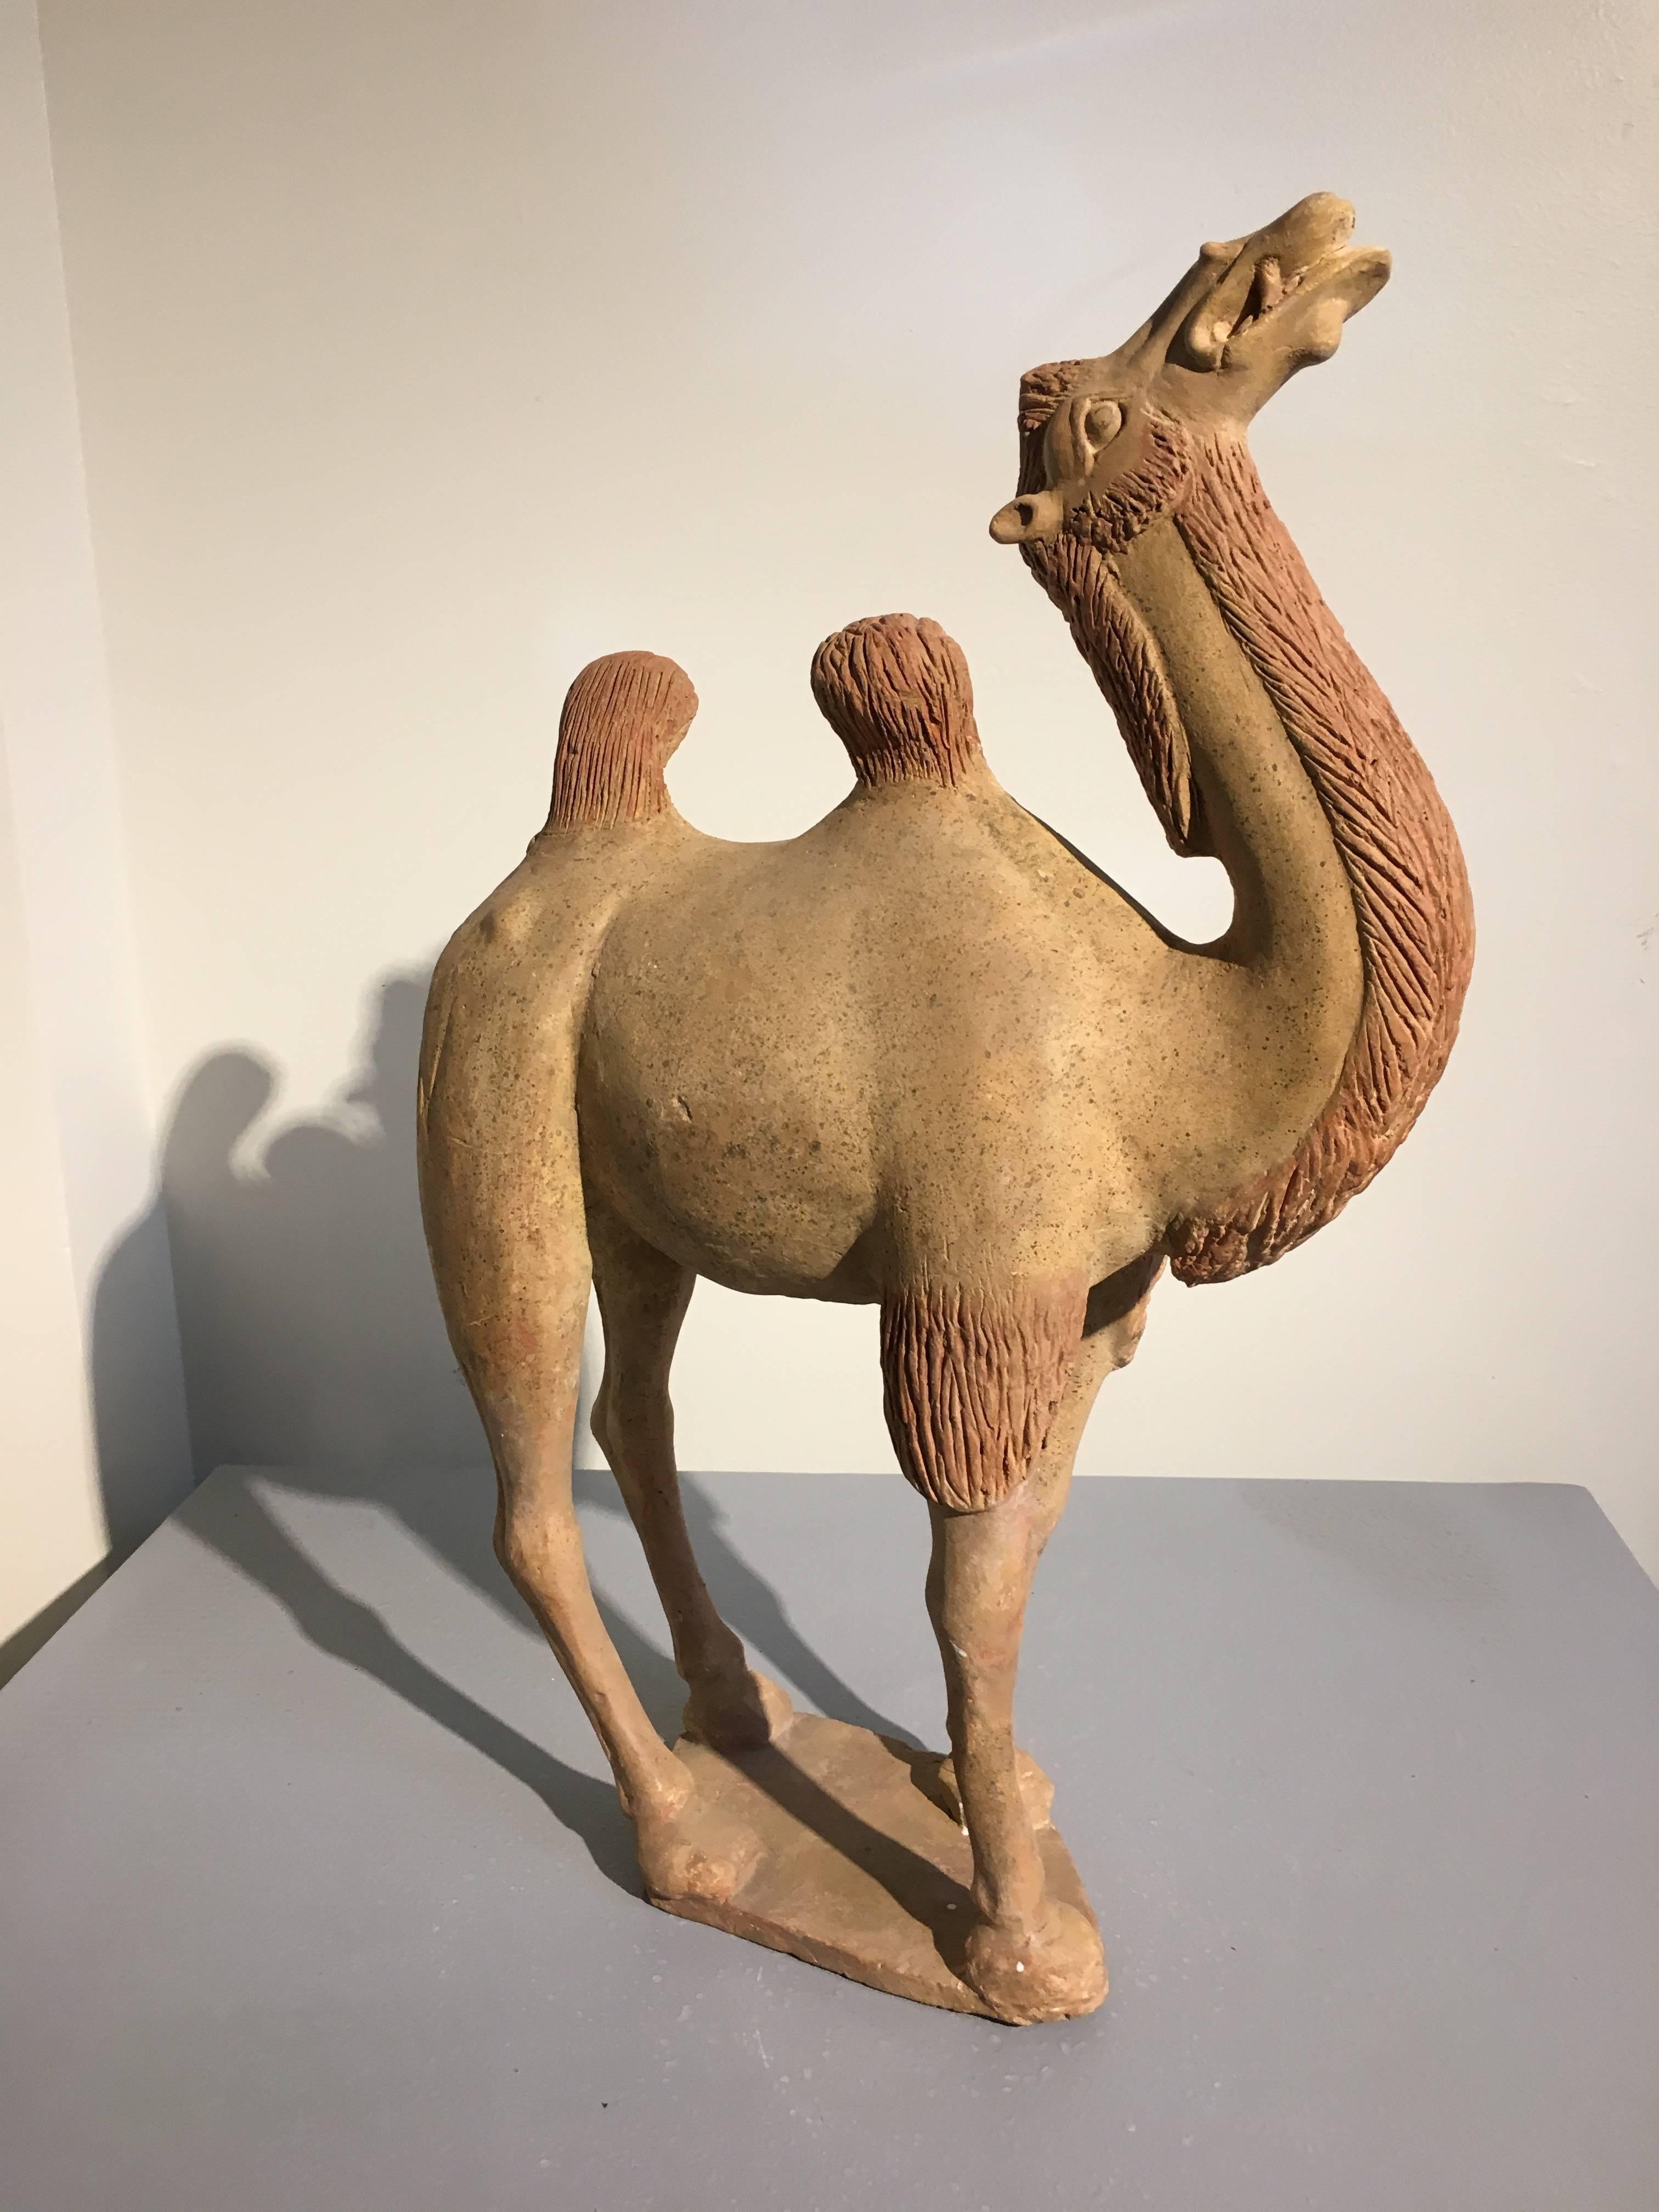 Un modèle de poterie chinoise de la dynastie Tang, puissamment sculpté, représentant un chameau. Le chameau est représenté dans une posture de marche, le long cou allongé, la tête haute, la bouche de travers, en train de ruminer. Les bosses du